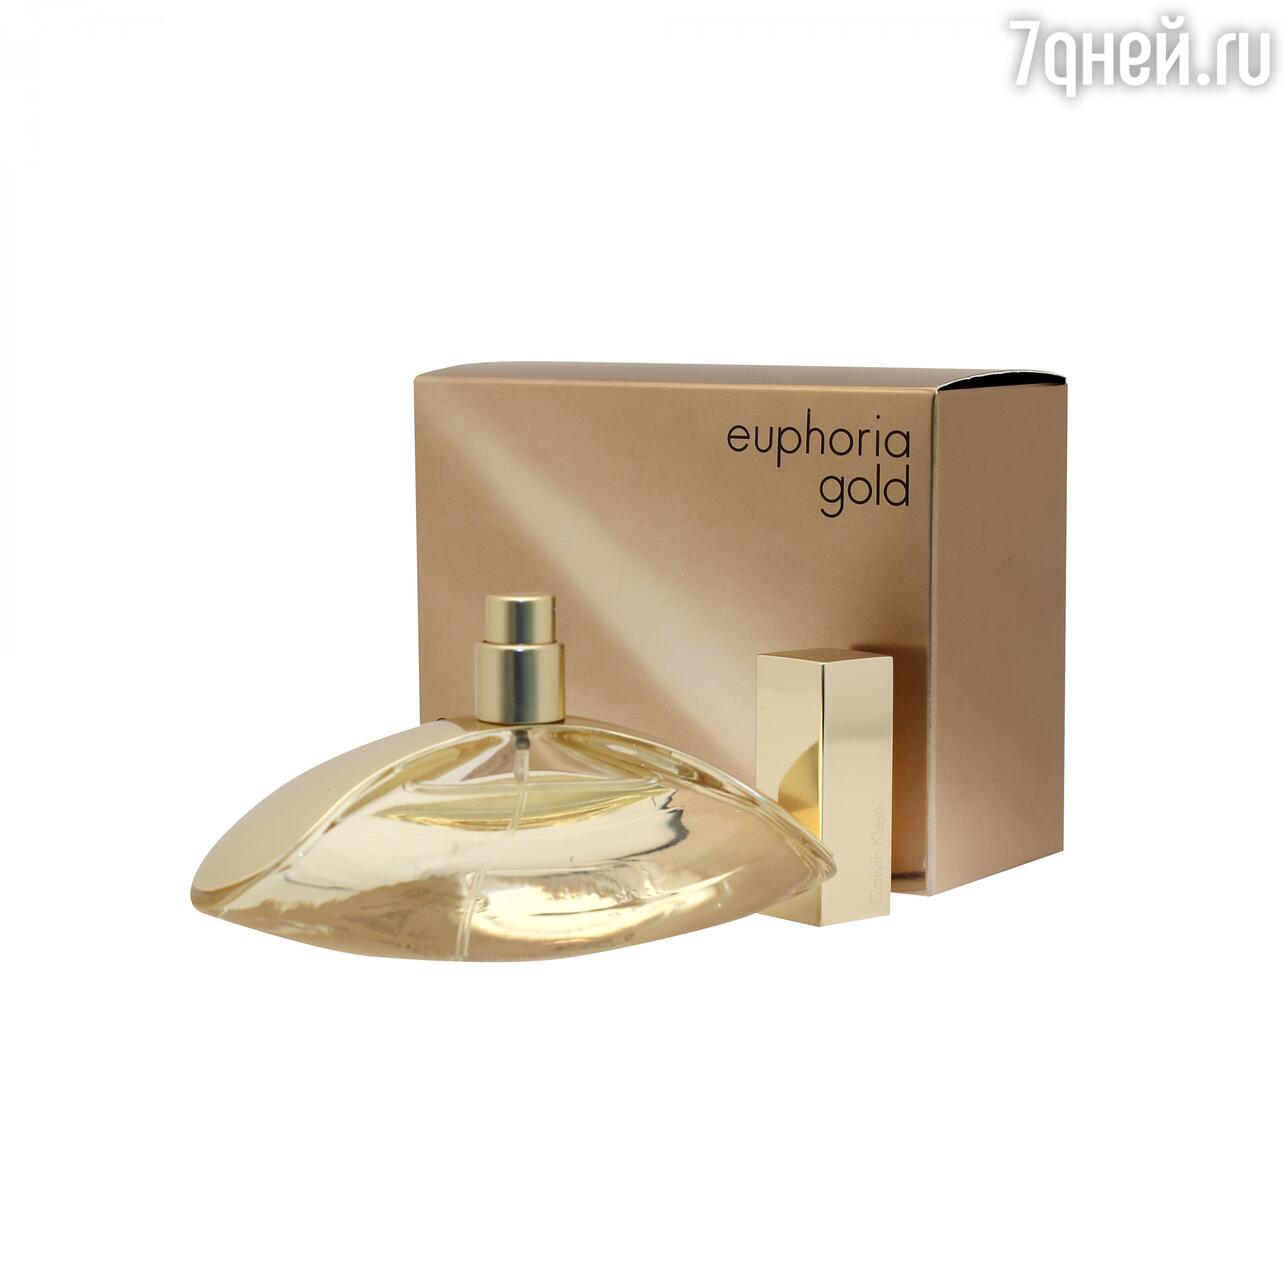 Euphoria Gold Limited Edition, Calvin Klein